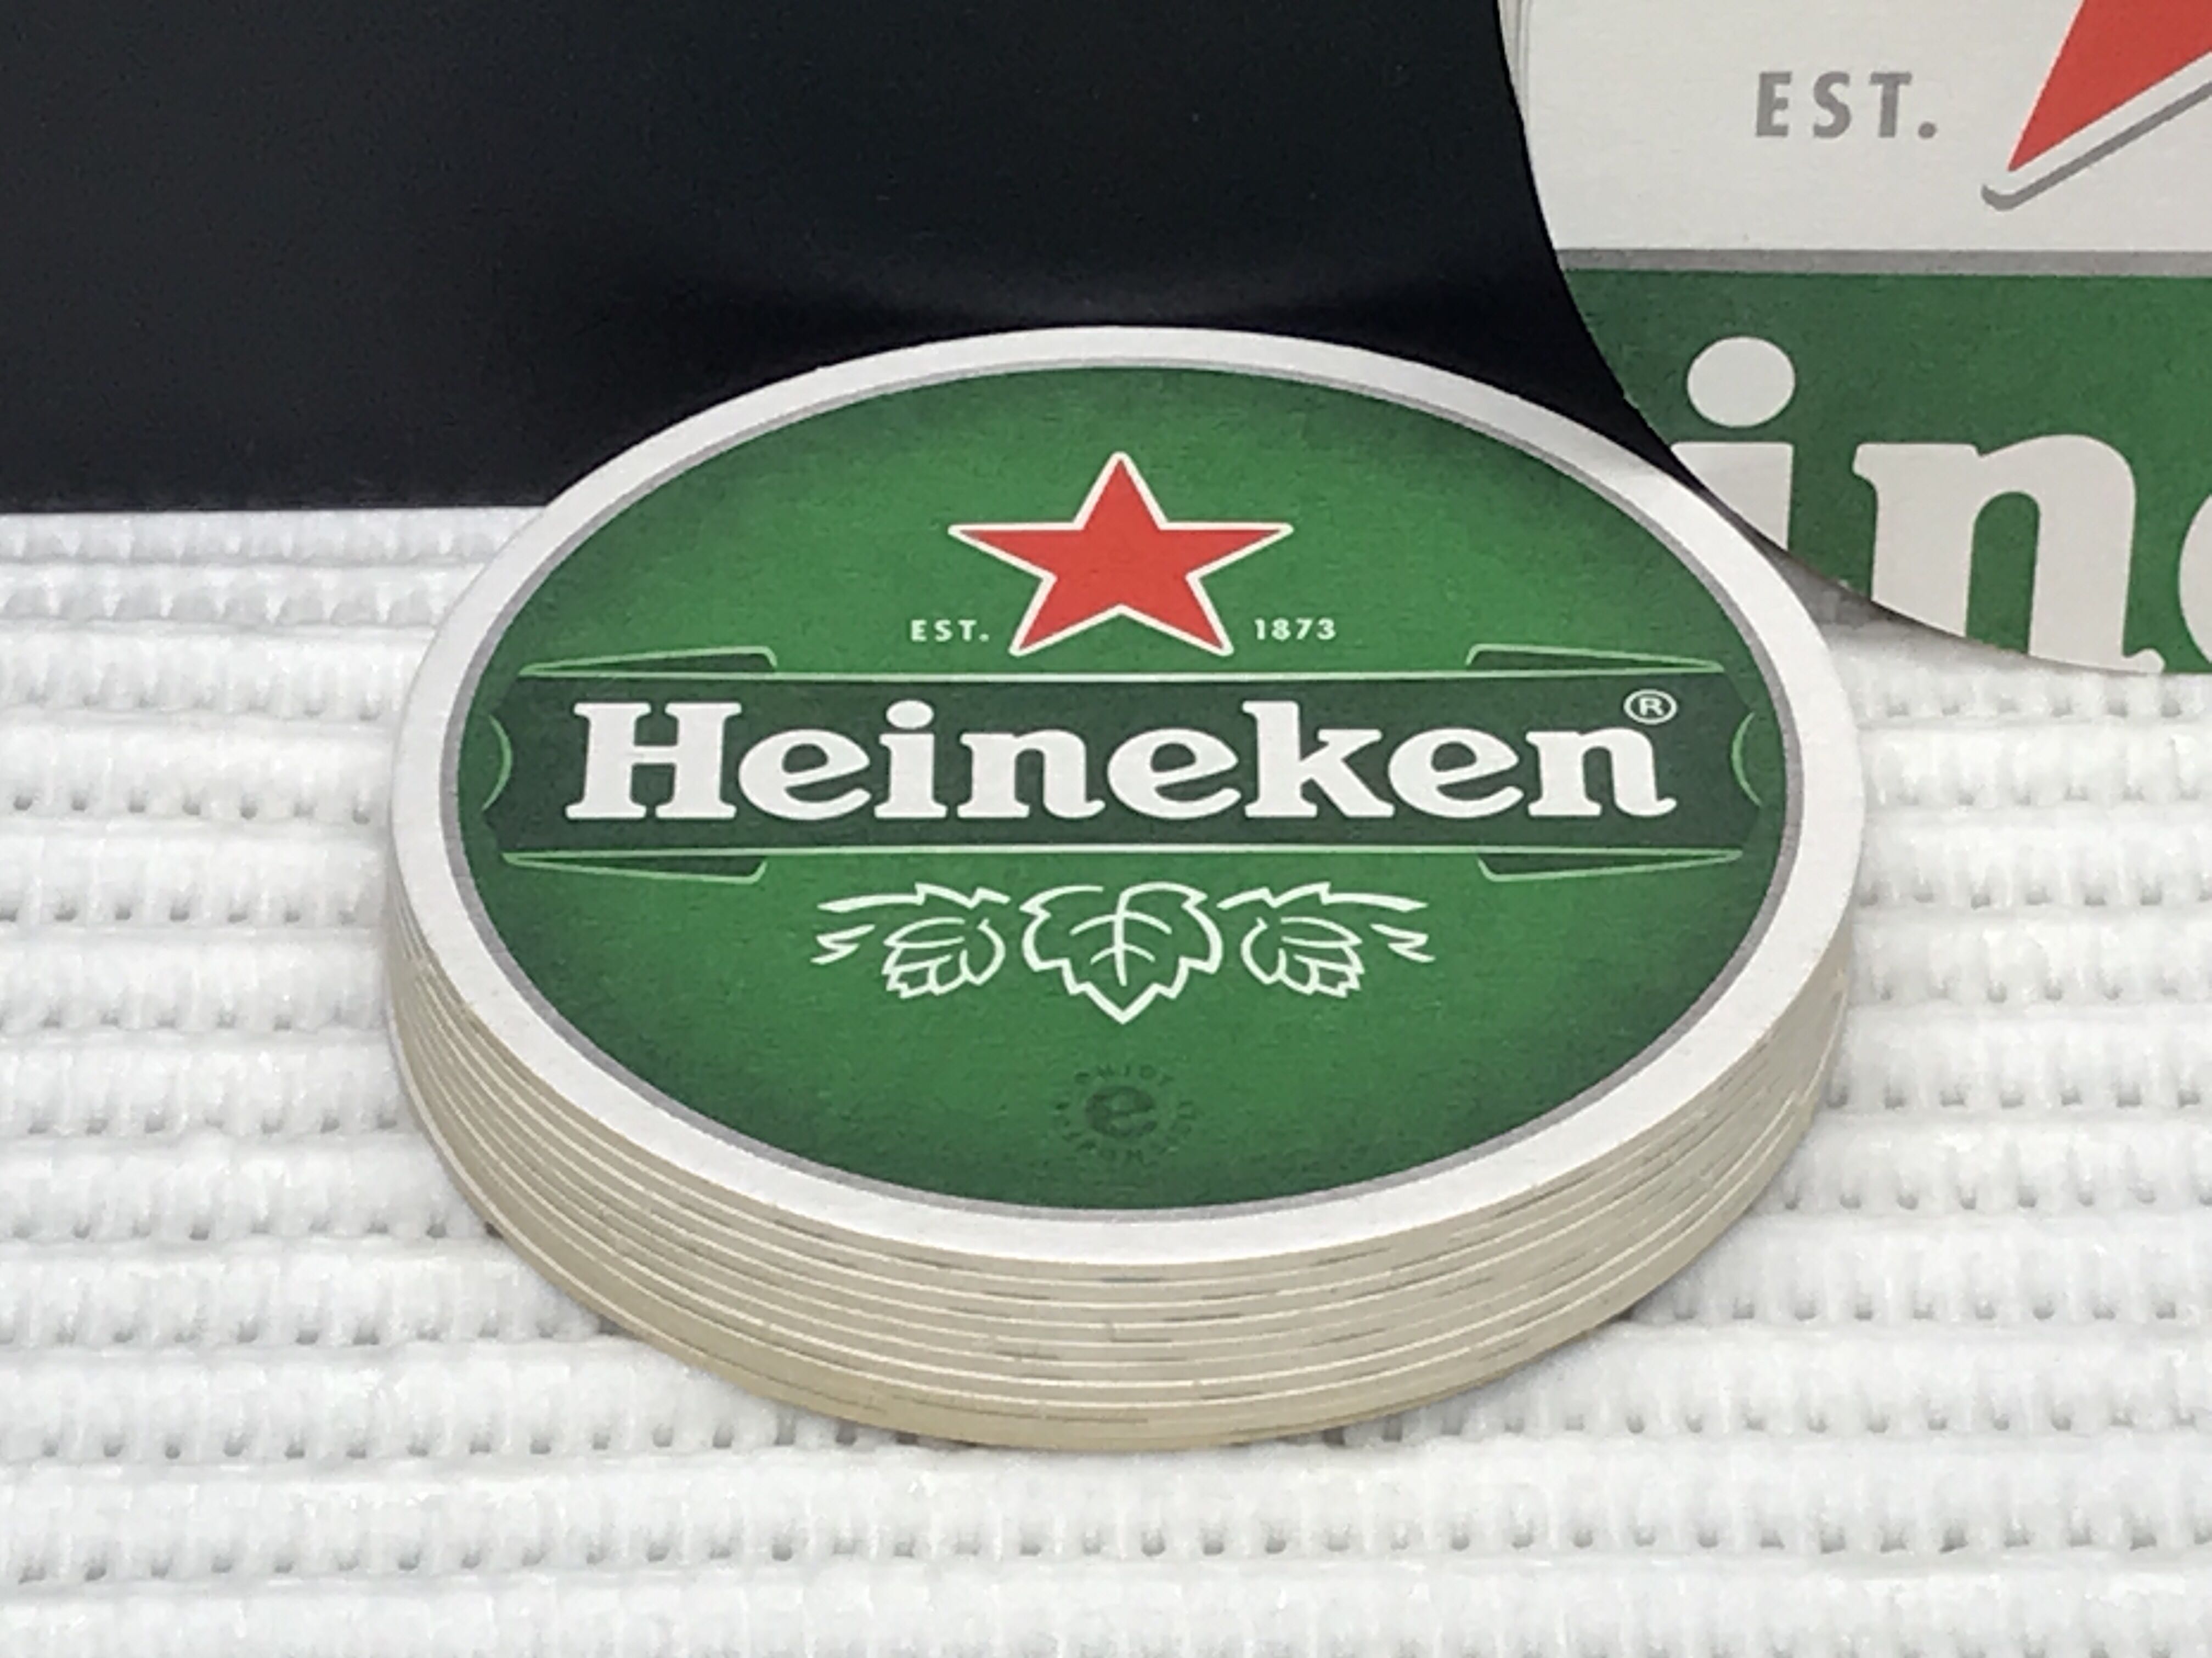 Heineken Heineken Trade Mark Beermat/Coaster 